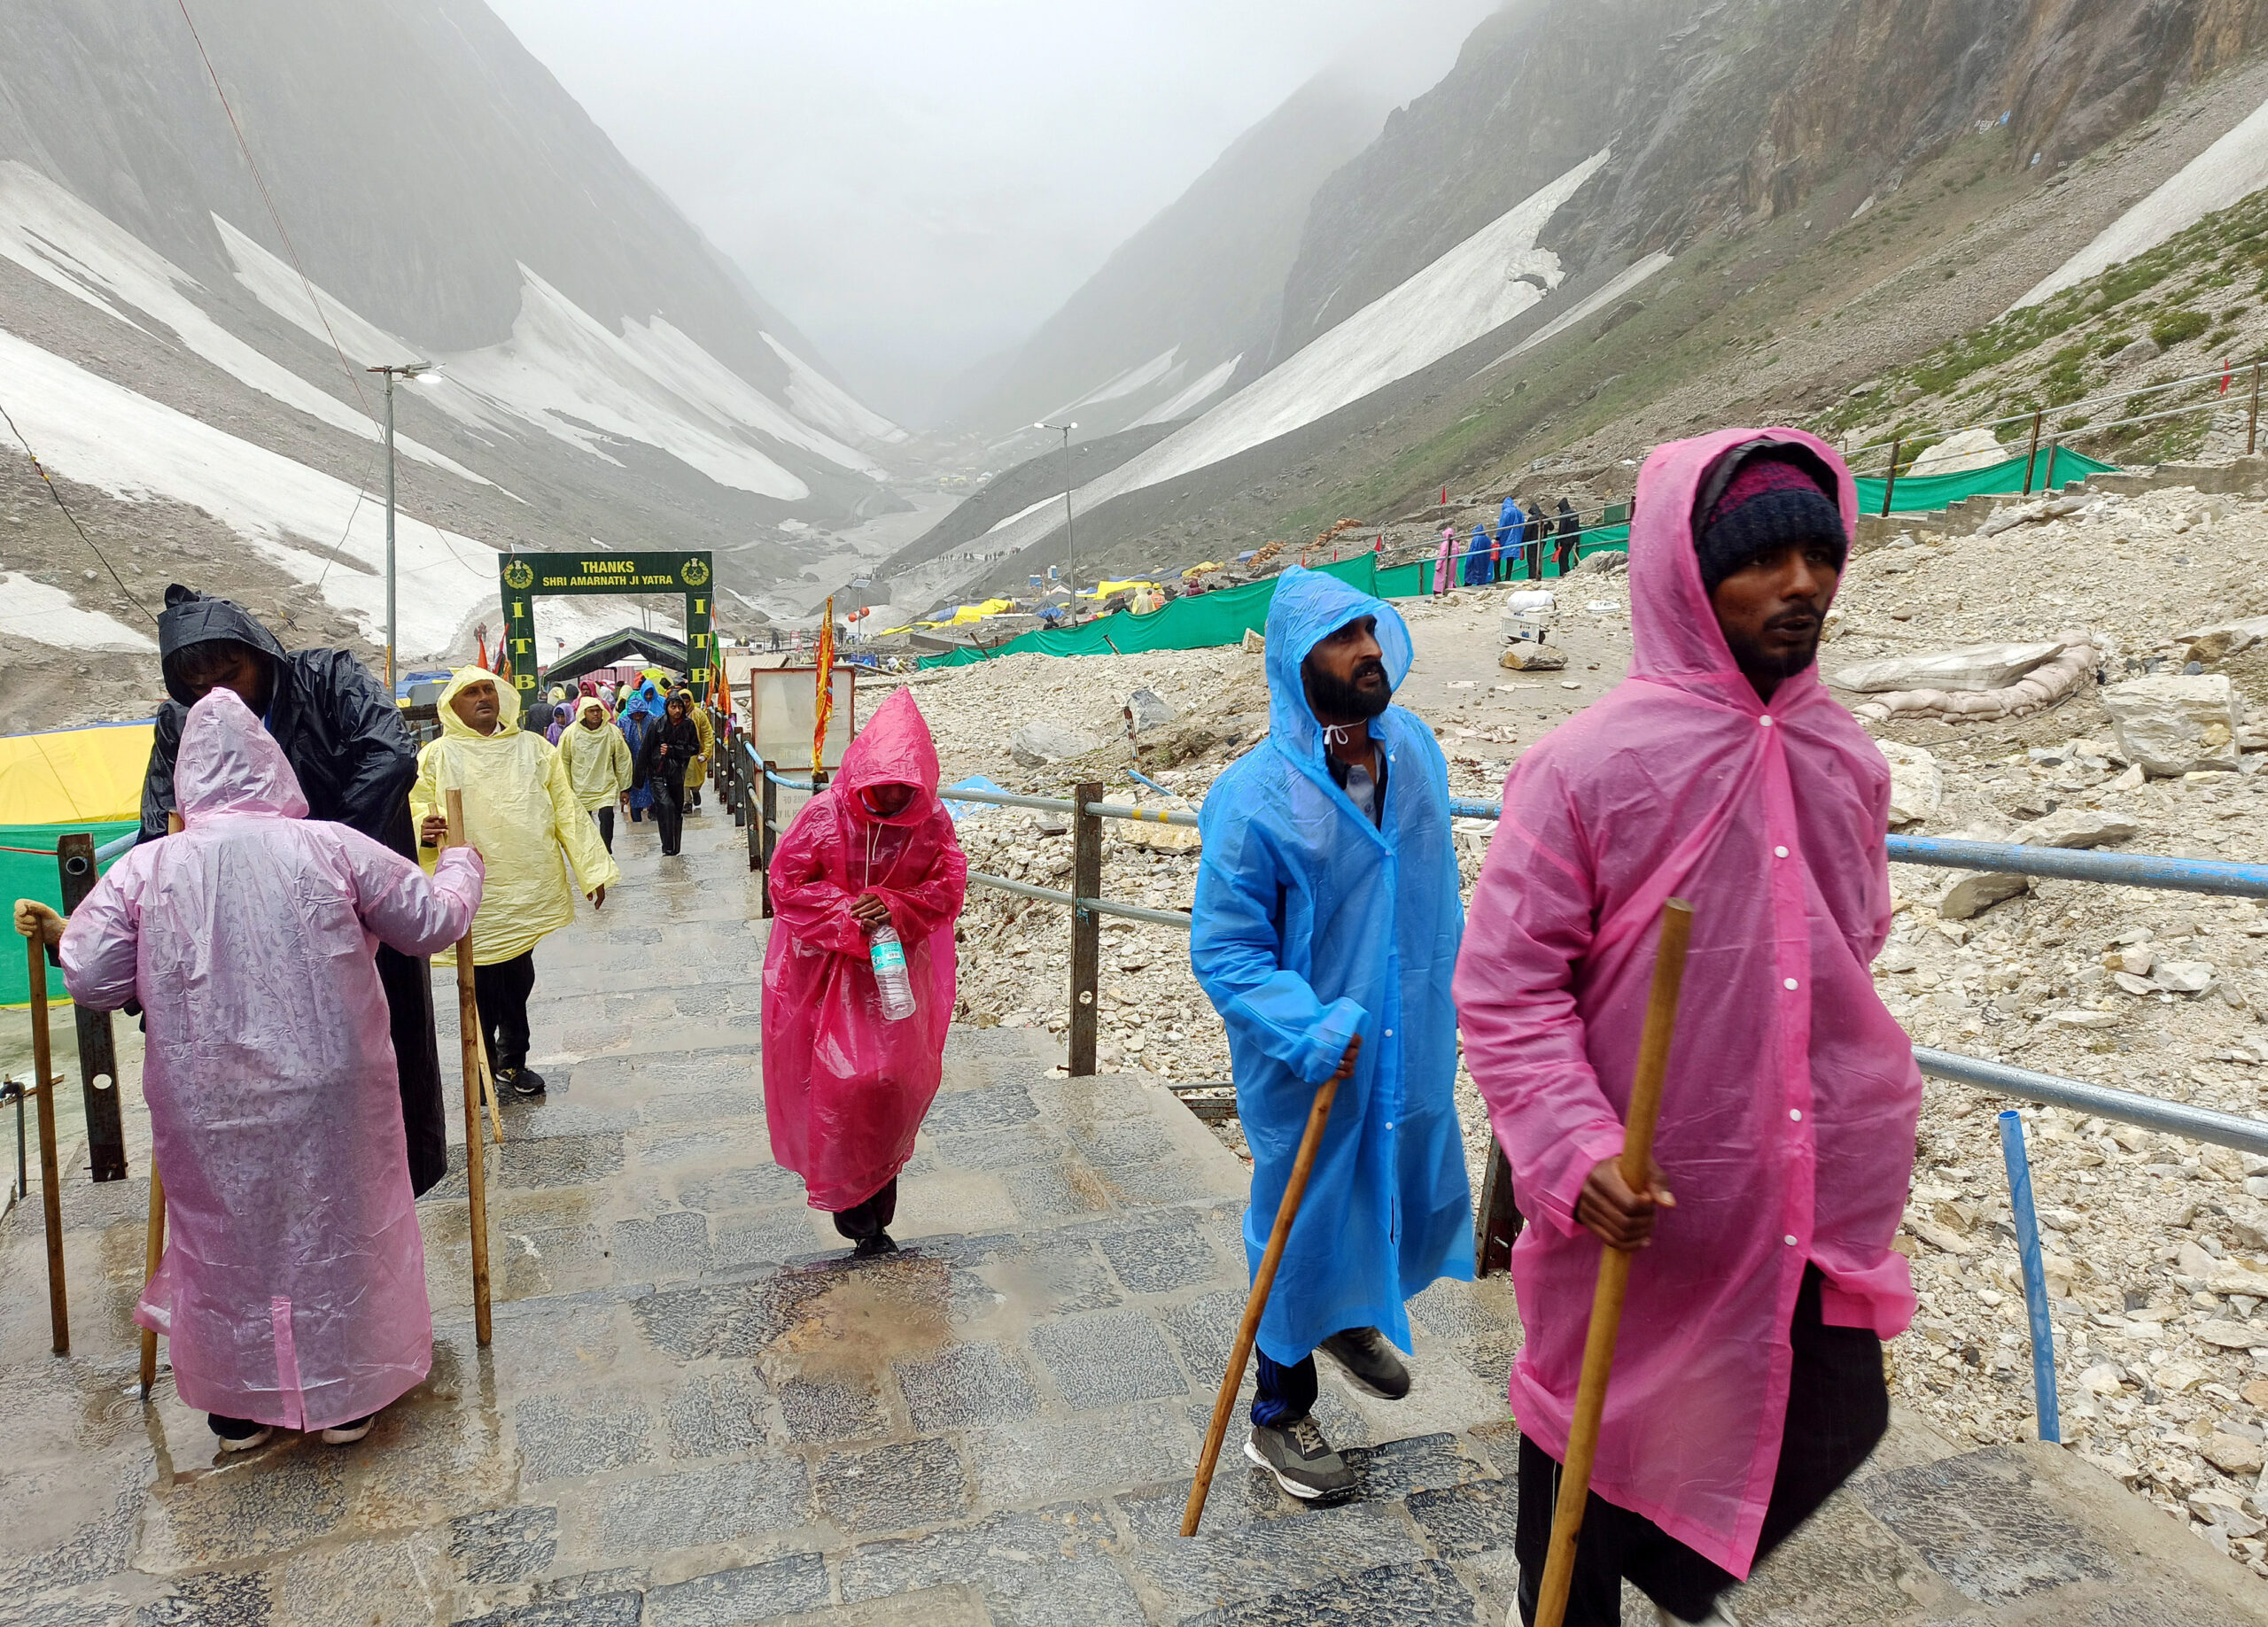 Amarnath Yatra: Pilgrims resume journey after weather improves